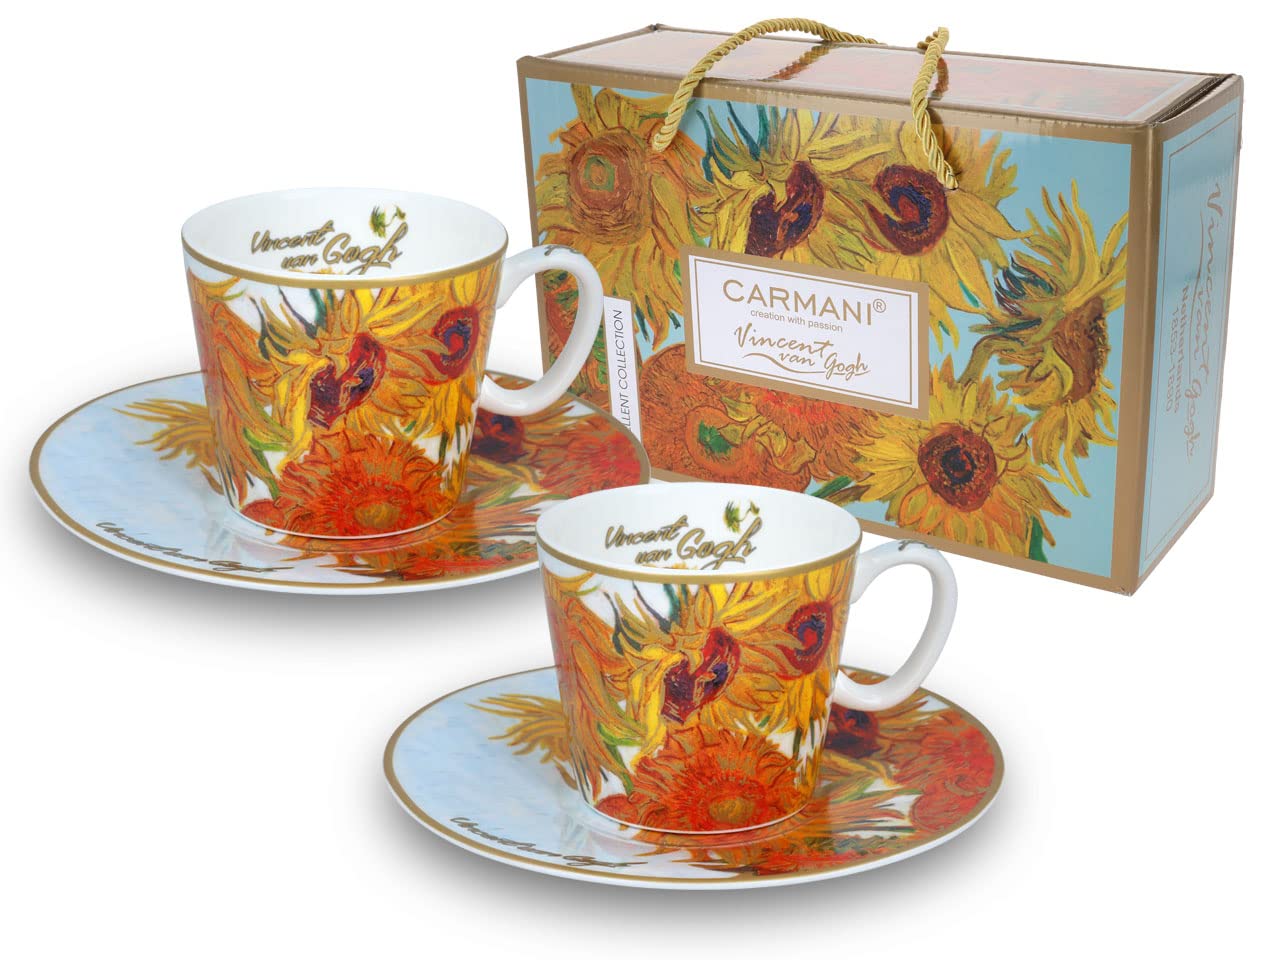 CARMANI - Espressotasse mit Untertasse 2er Set 'Sonnenblumen' von Vincent Van Gogh 125ml